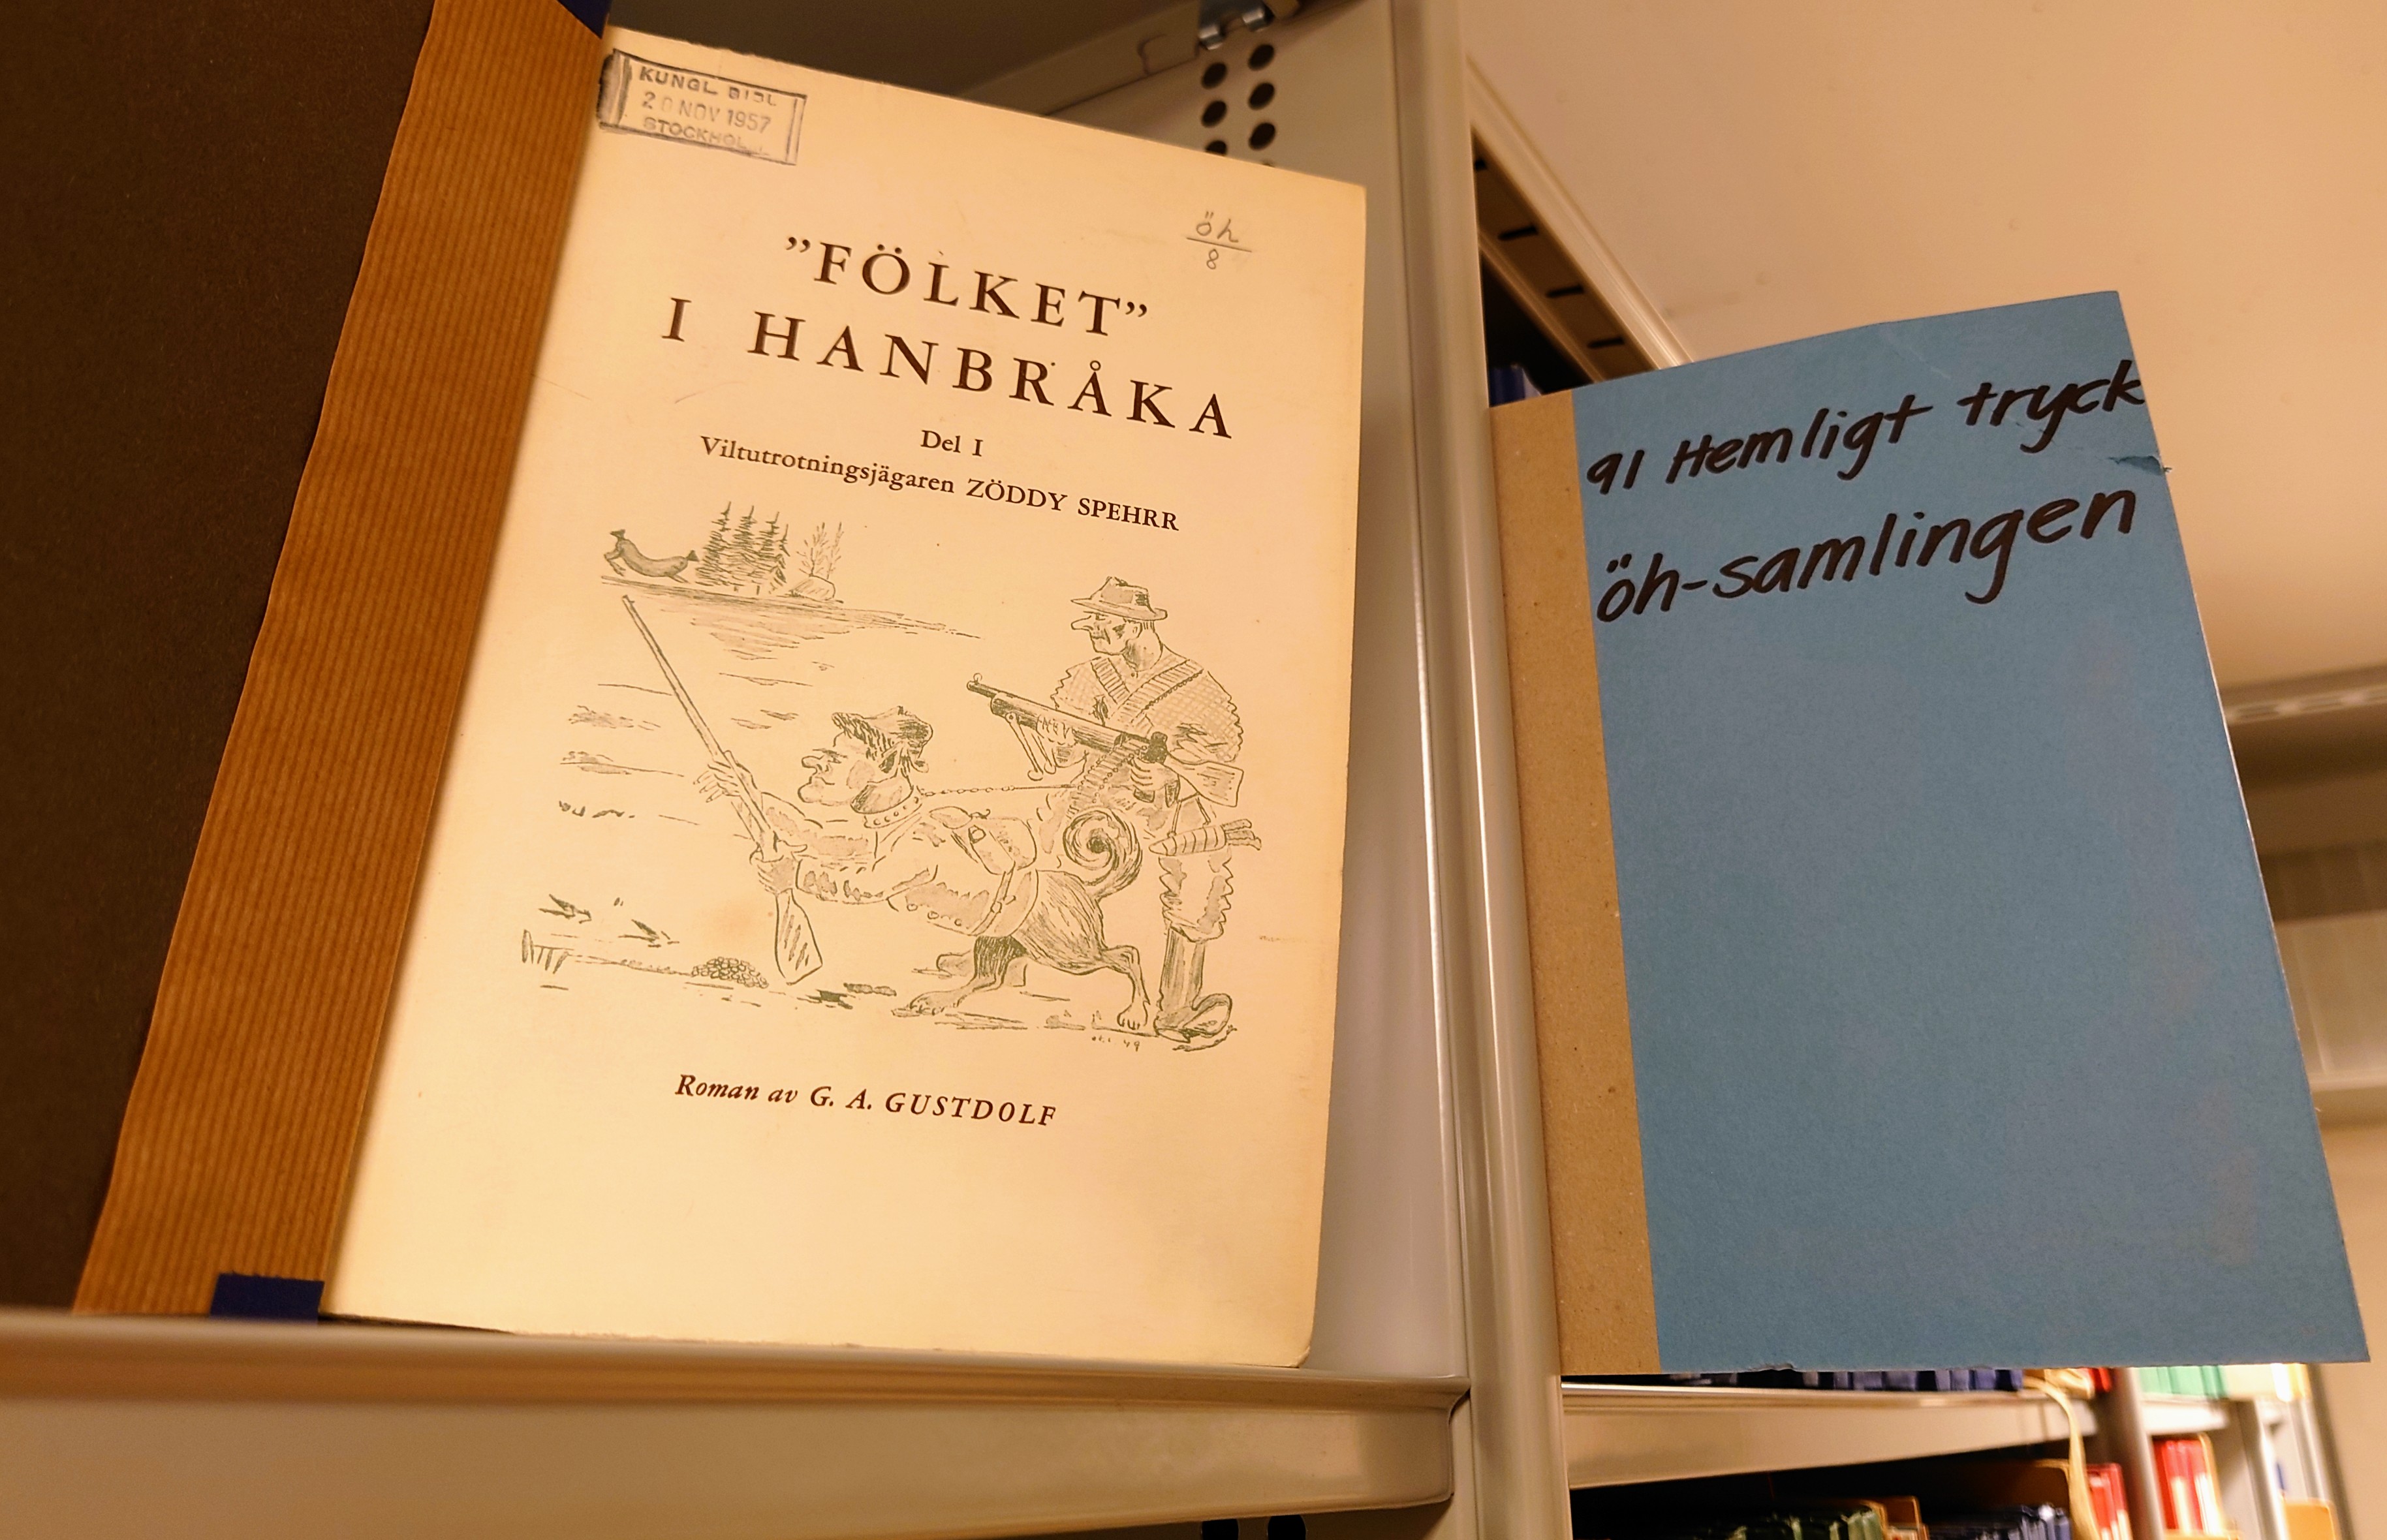 Uppslagen bok med titeln "Fölket" i Hanbråka på grå metallhylla bredvid blå skylt med texten 91 Hemligt tryck öh-samlingen.